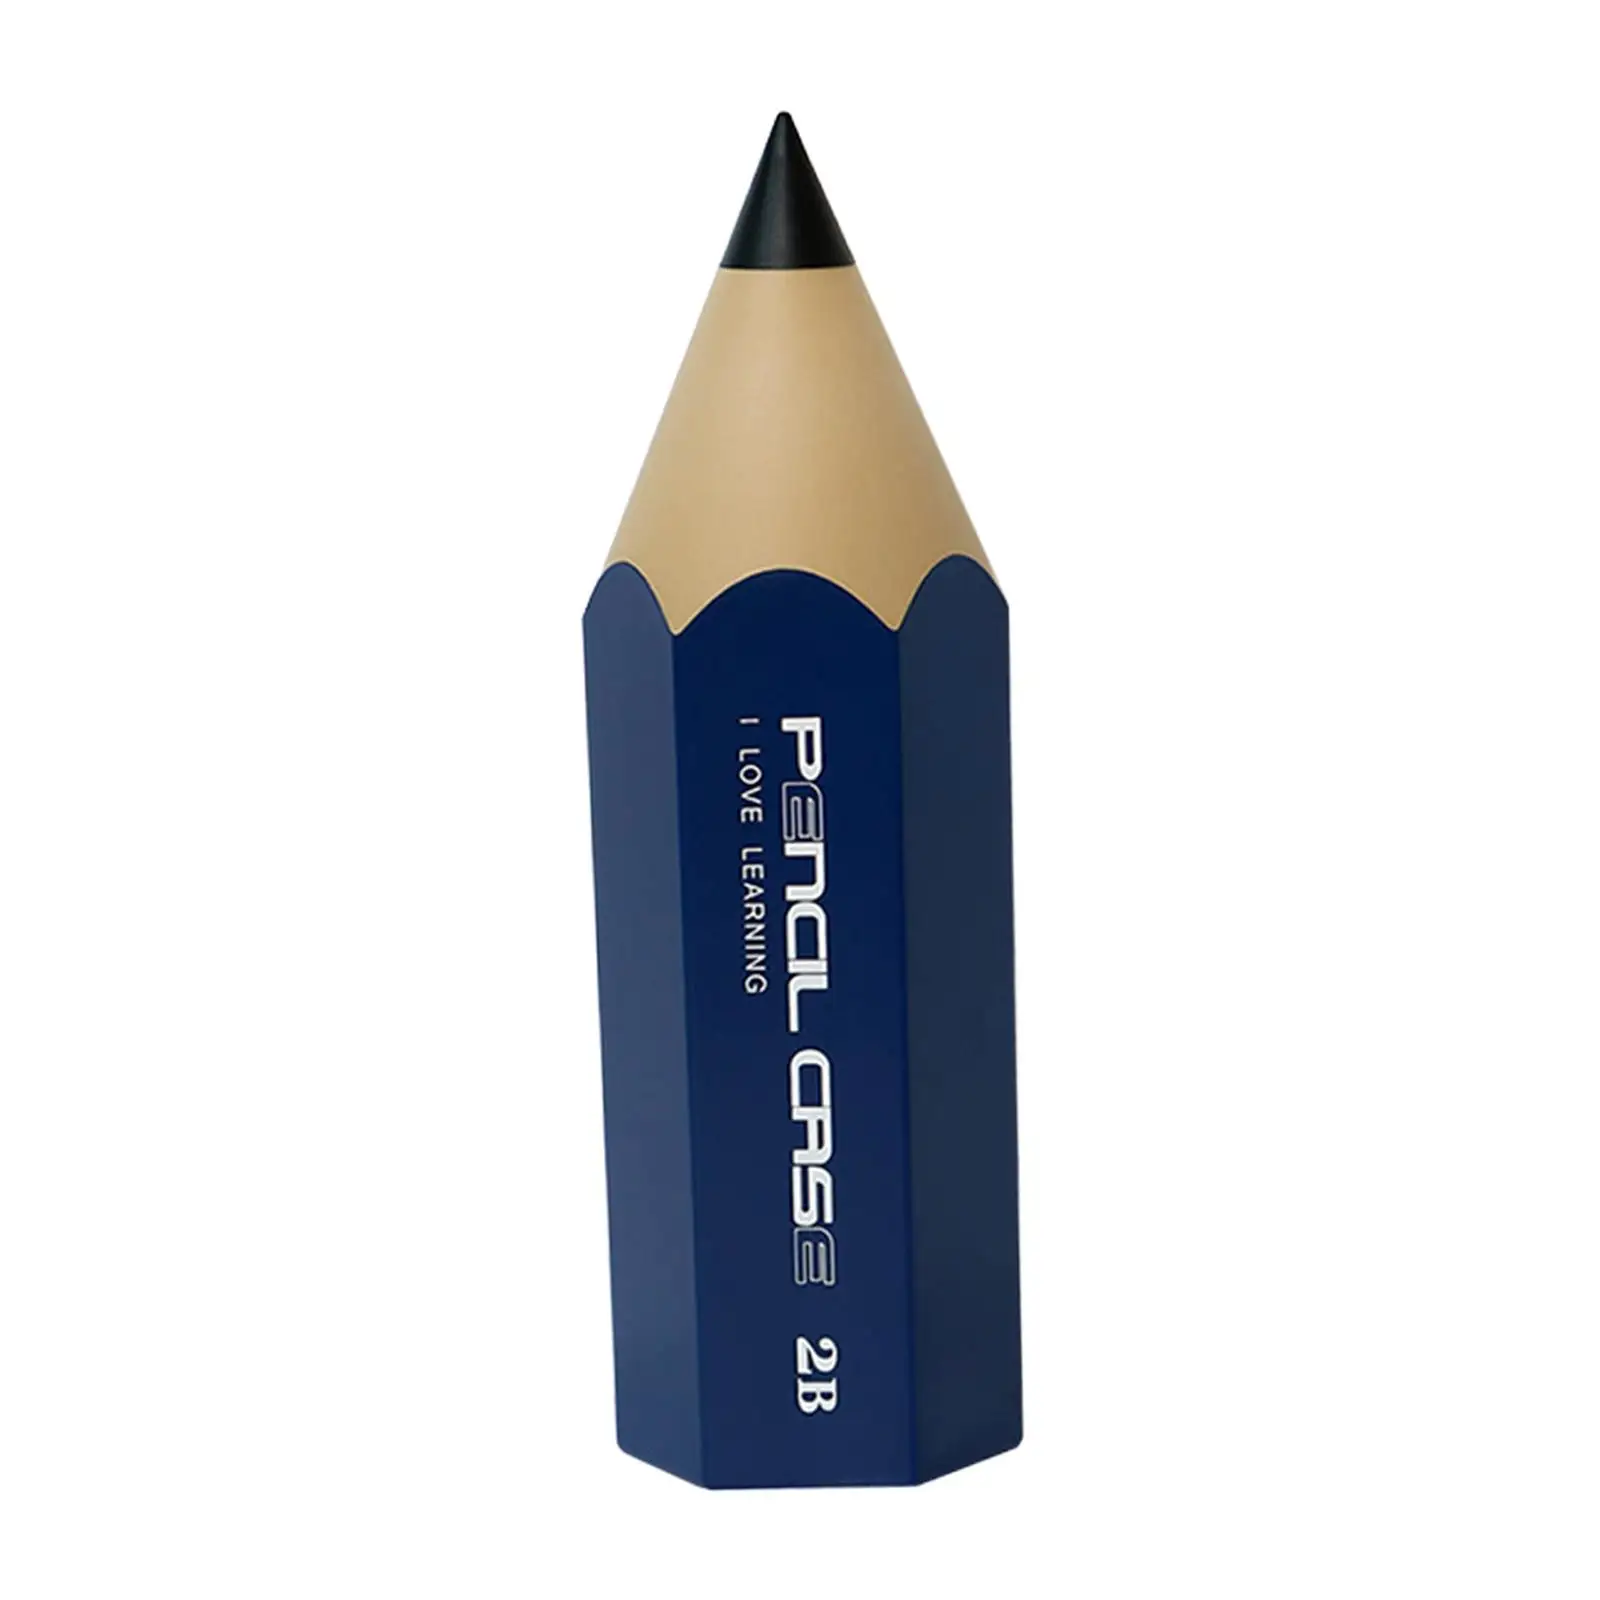 Pencil Shaped Pen Holder Cute Pen Organizer Desktop Organizer Case Desk Pen Holder for Desk Accessories Office Supplies Lipstick